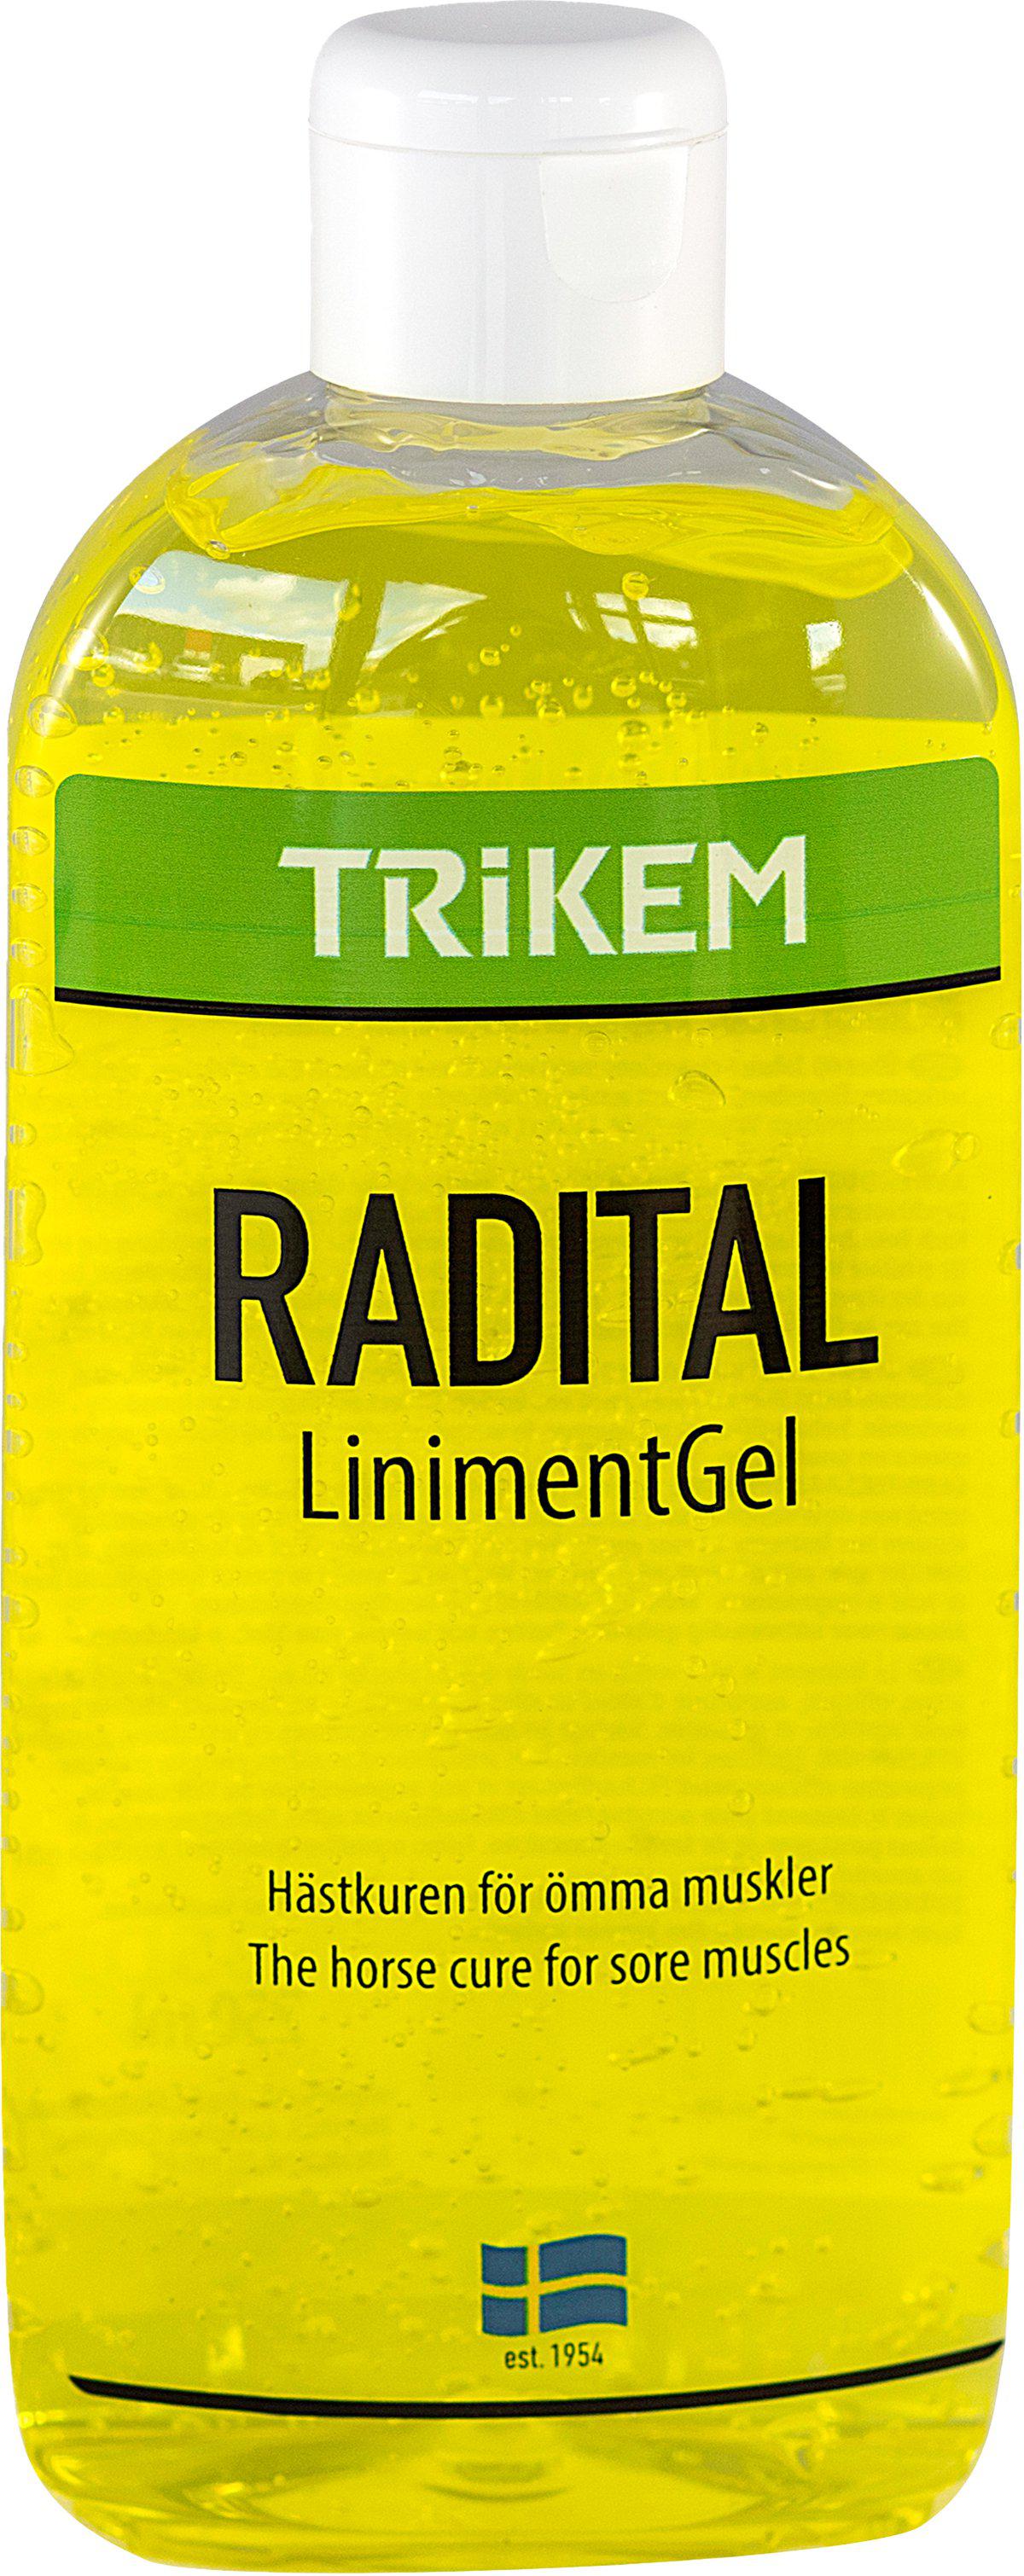 TRIKEM - Linimentgel 500Ml - (721.2312) - Kjæledyr og utstyr